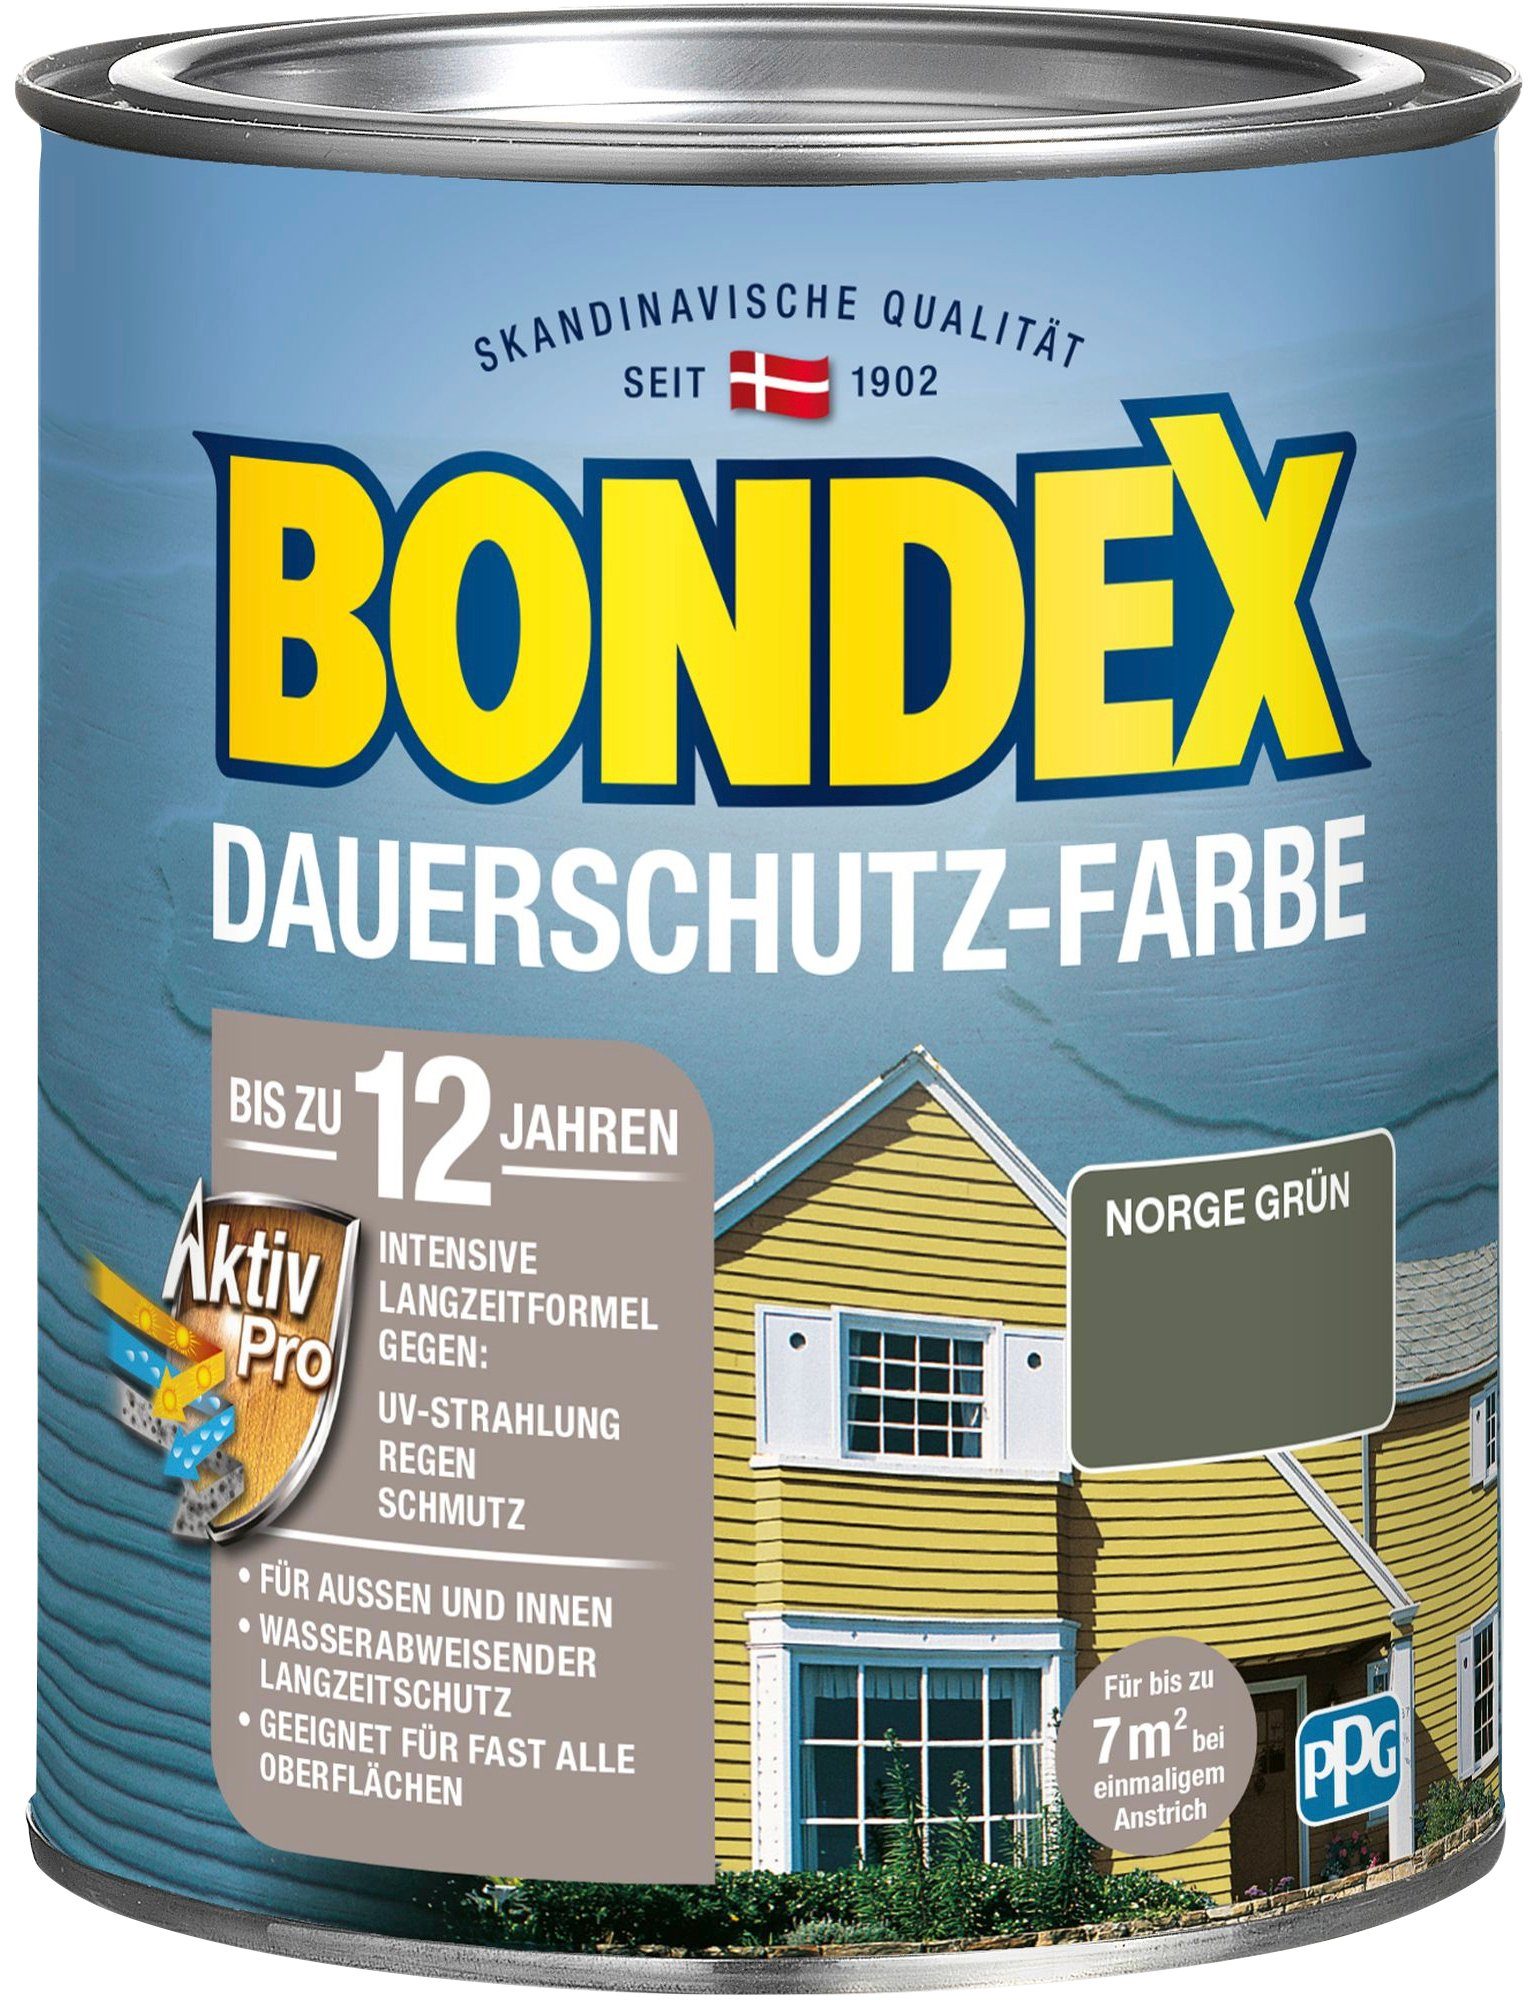 Bondex Wetterschutzfarbe DAUERSCHUTZ-FARBE, für Außen und Innen, Wetterschutz mit Aktiv Pro Langzeitformel Norge Grün